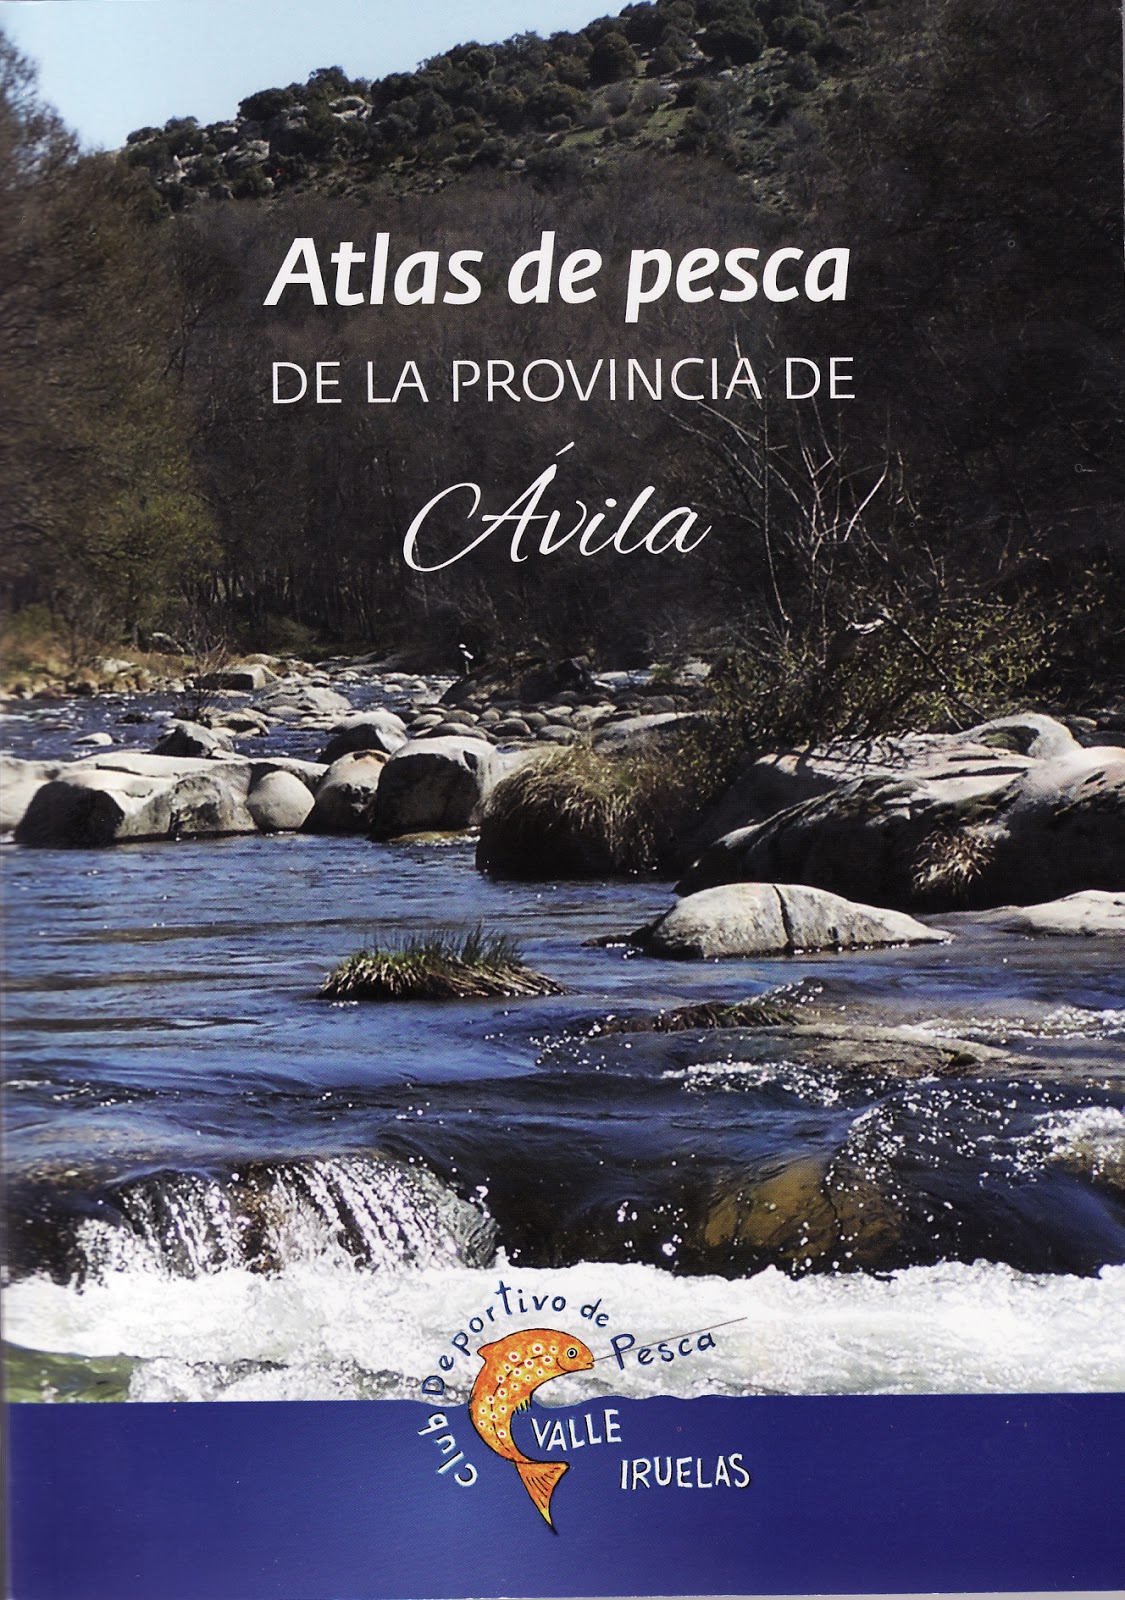 "ATLAS DE PESCA DE LA PROVINCIA DE ÁVILA"